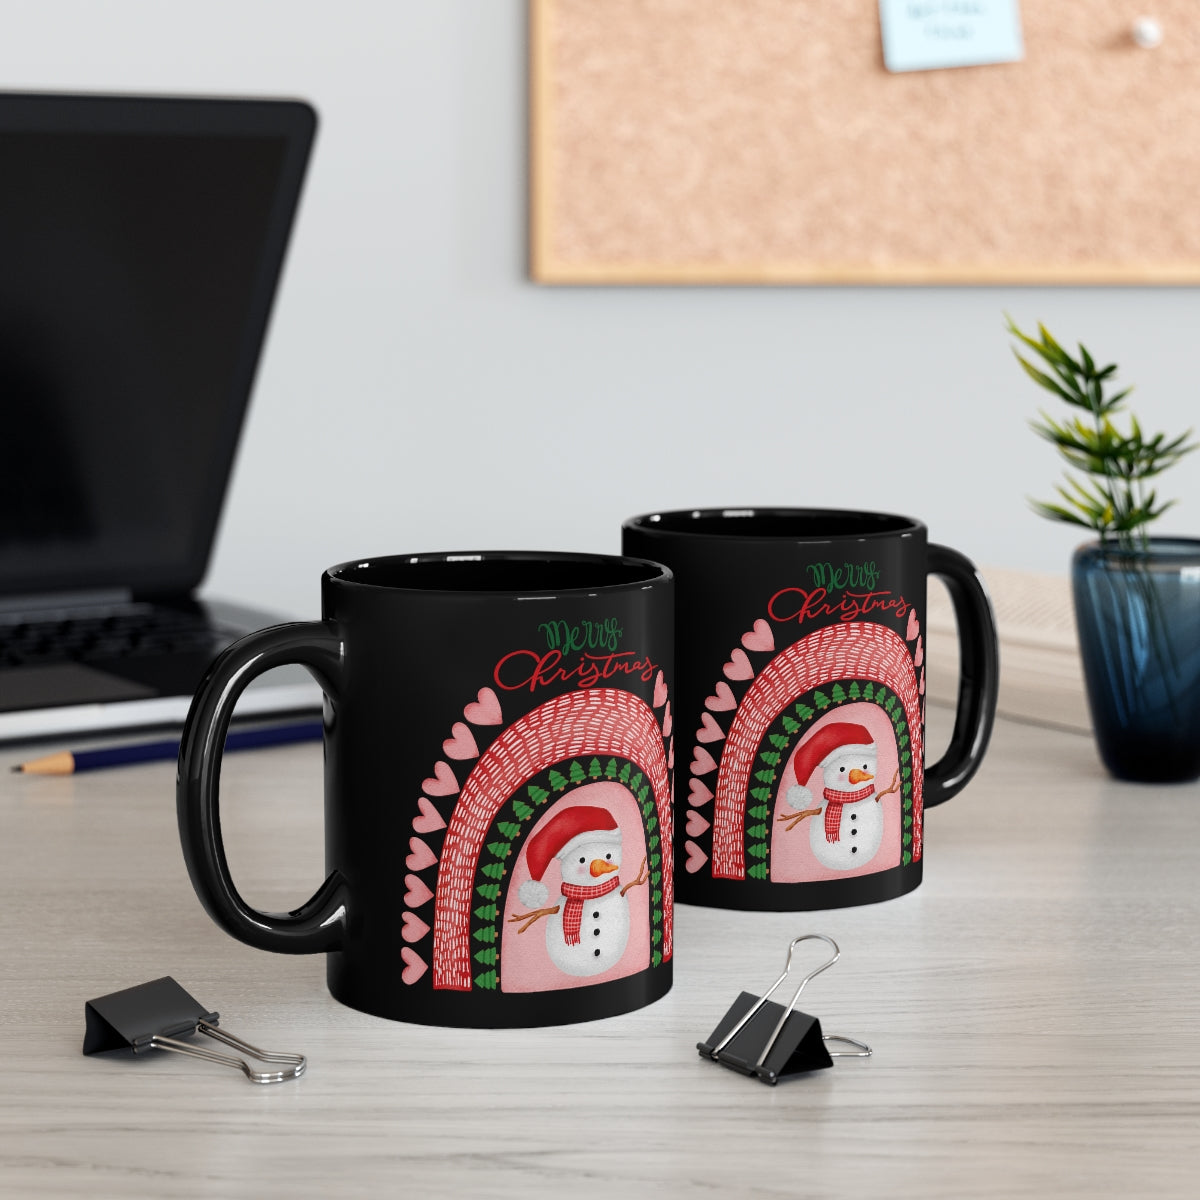 MERRY CHRISTMAS 11oz Black Mug, Christmas Gift, Holiday gift